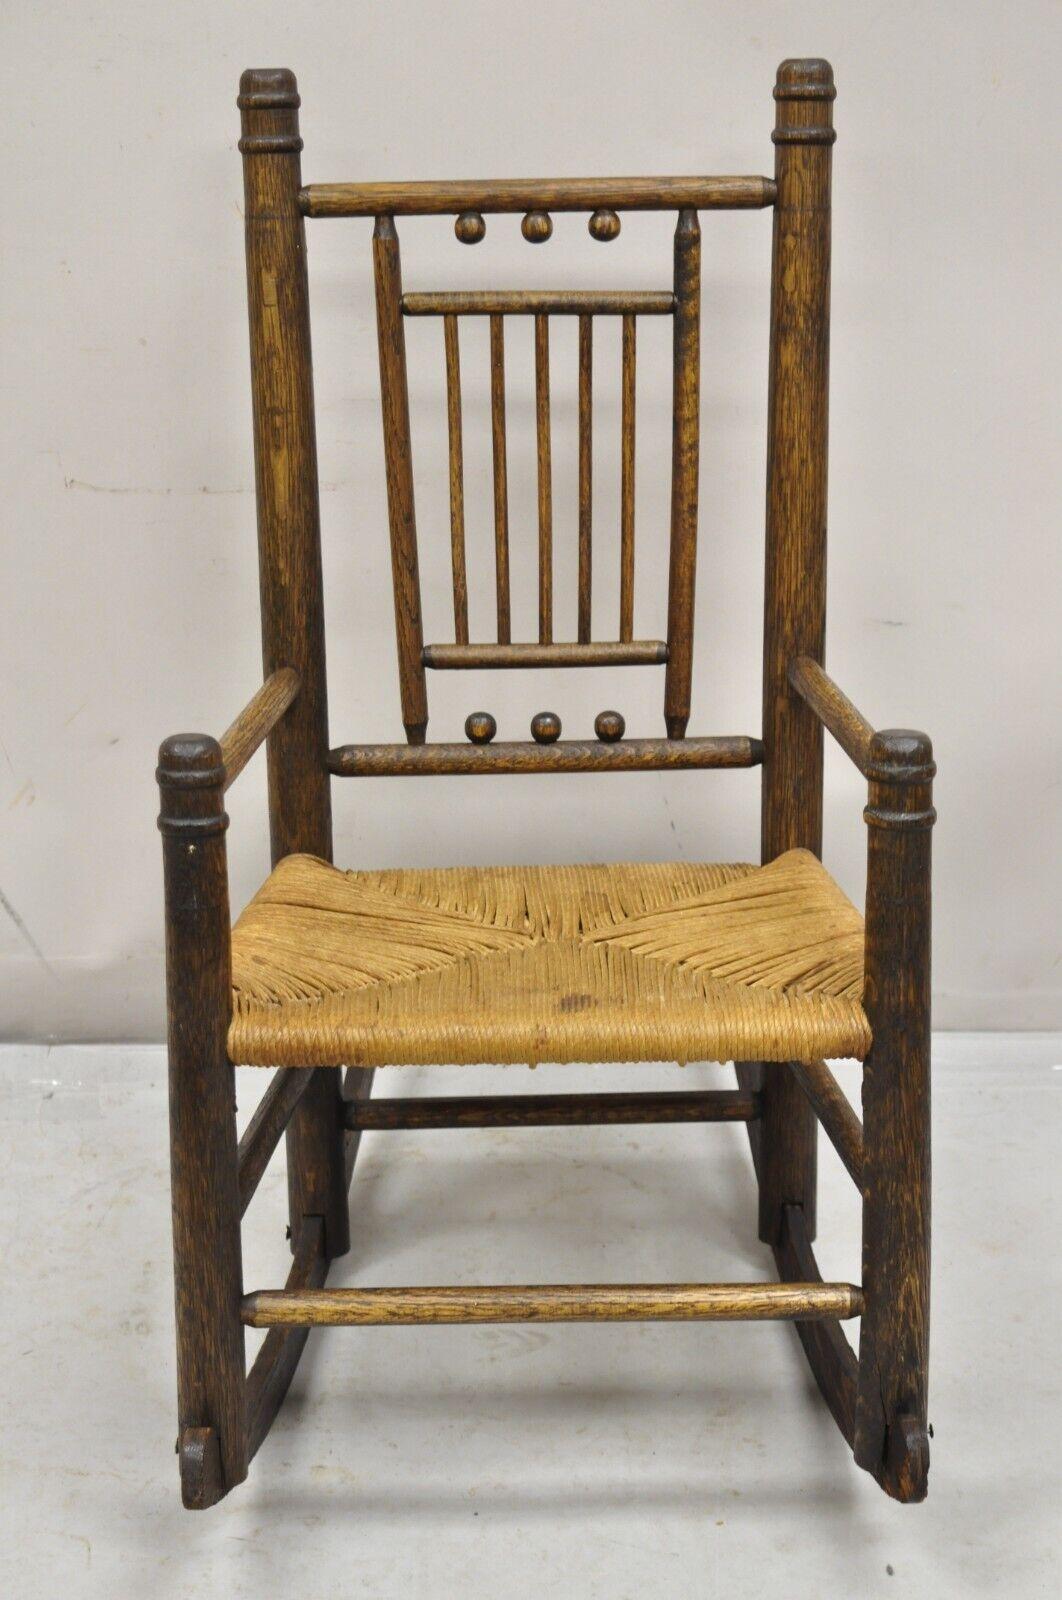 Antike Arts & Crafts viktorianischen Eichenholz Binsen Sitz Small Child's Schaukelstuhl. Die Sitzfläche ist aus geflochtenem Seil, die Rückenlehne ist mit Stöcken und Kugeln versehen, ein sehr einzigartiger Kinderstuhl.  Circa 19. Jahrhundert.